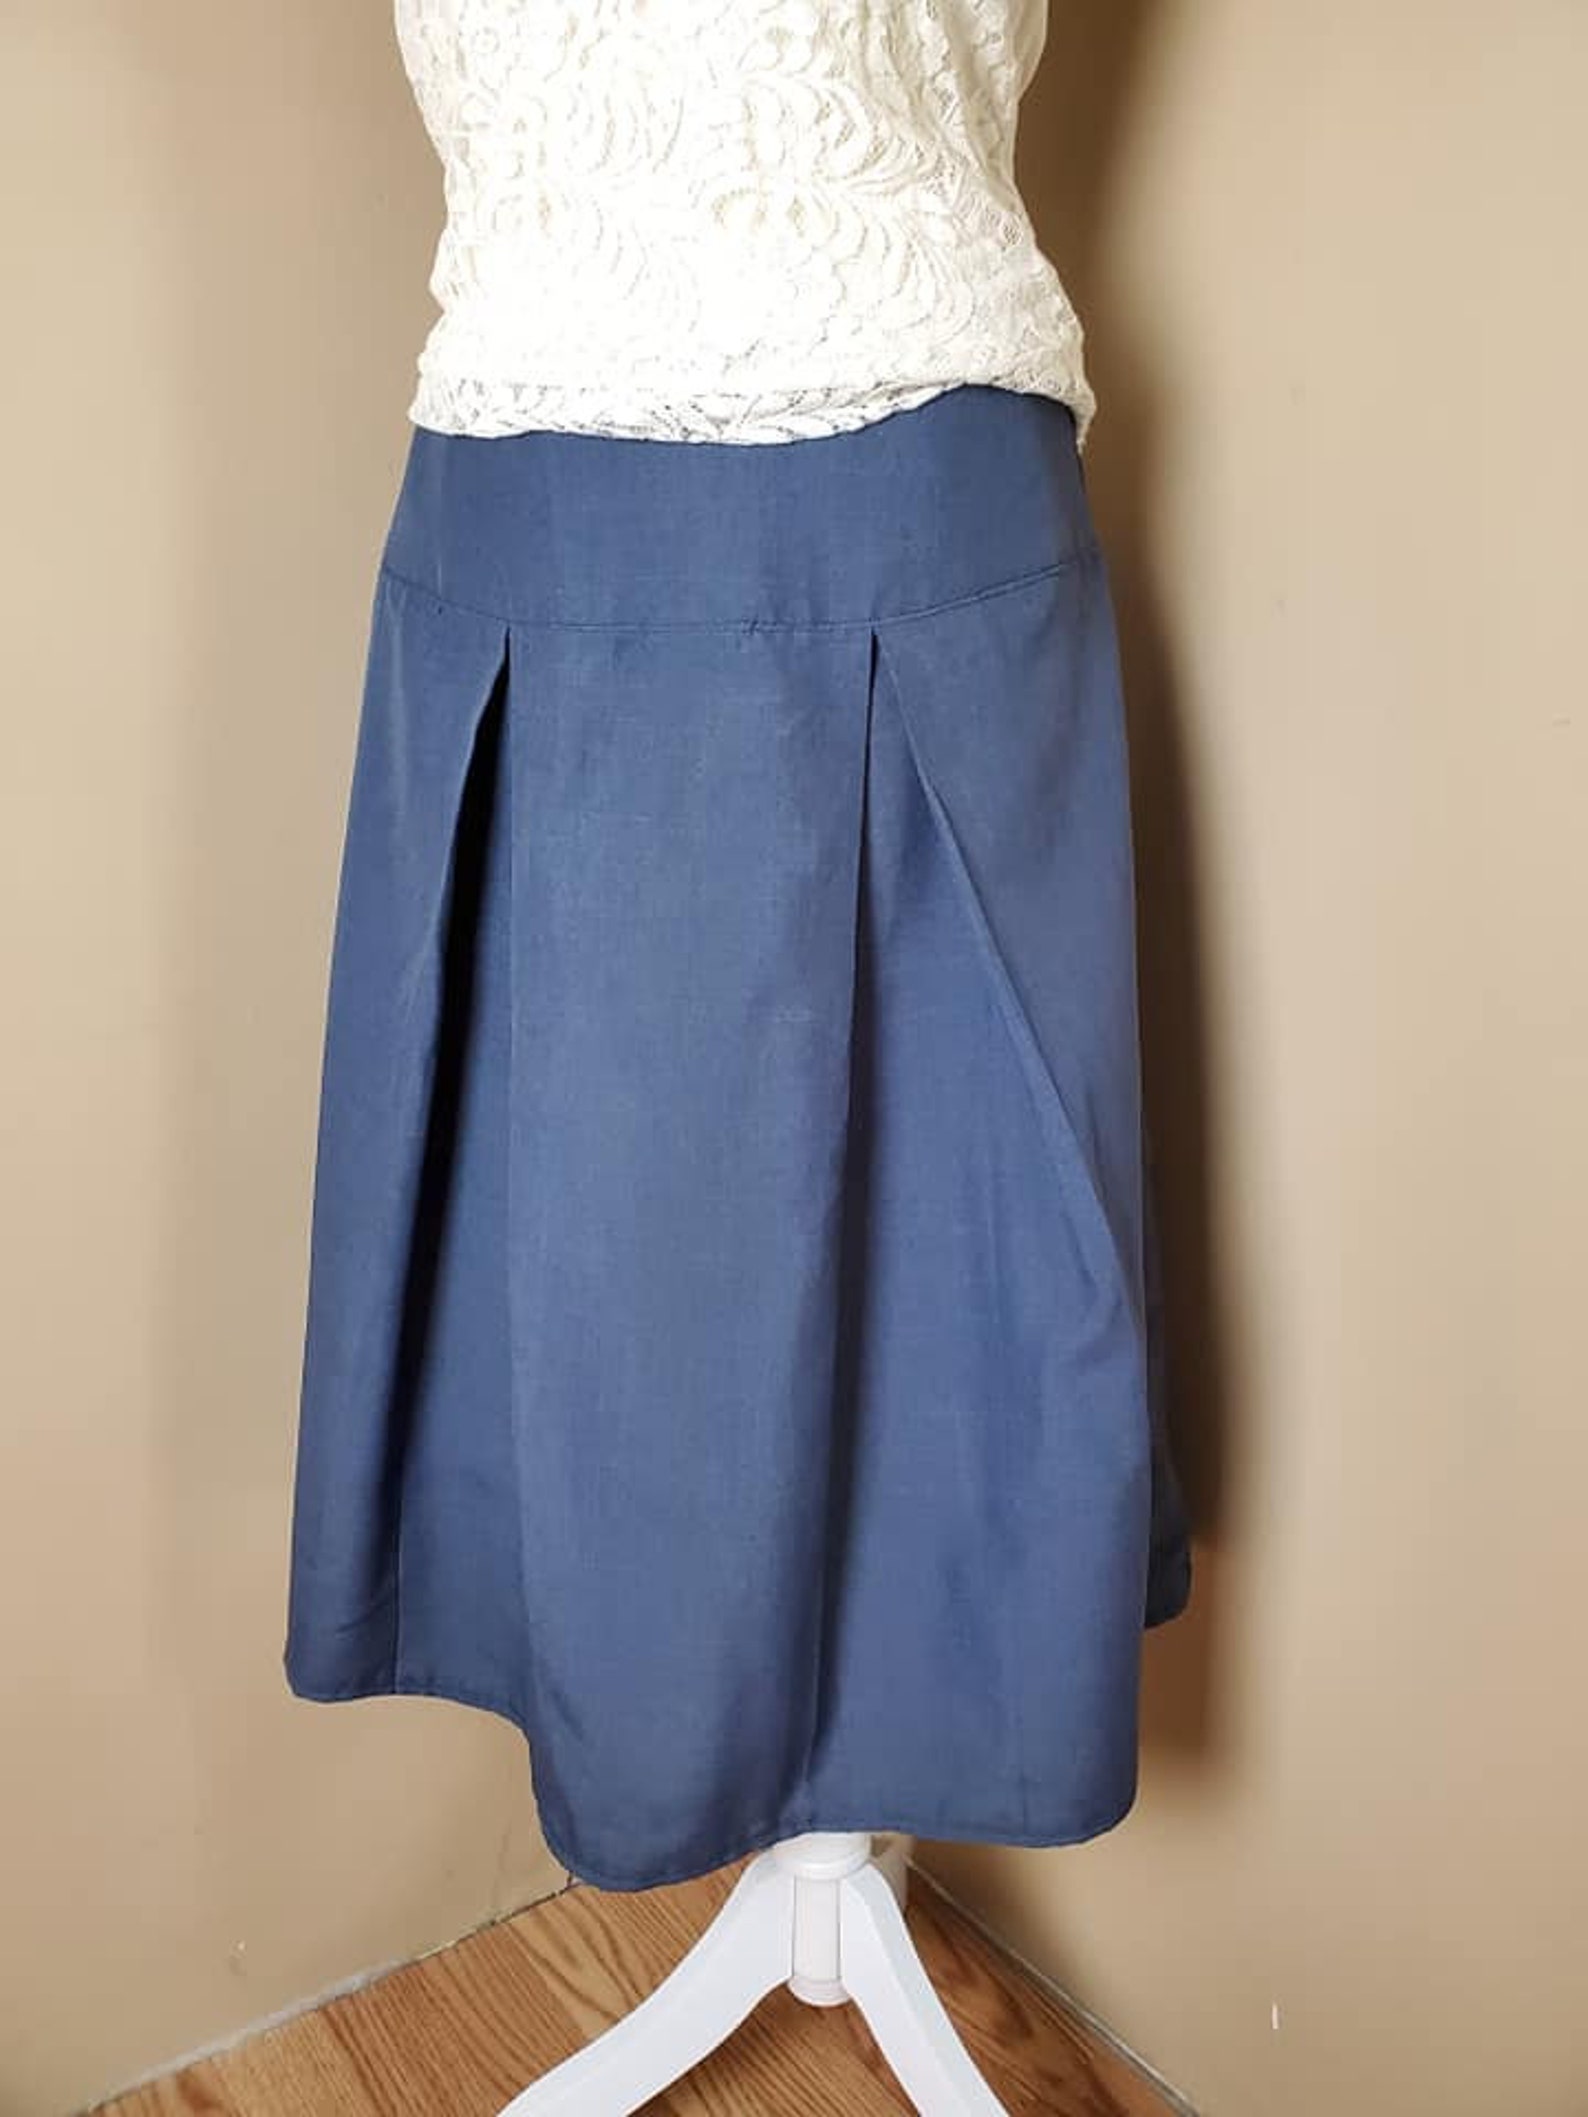 Blue Pleated Skirt, Yoke Waist, Mid-calf Length - Etsy